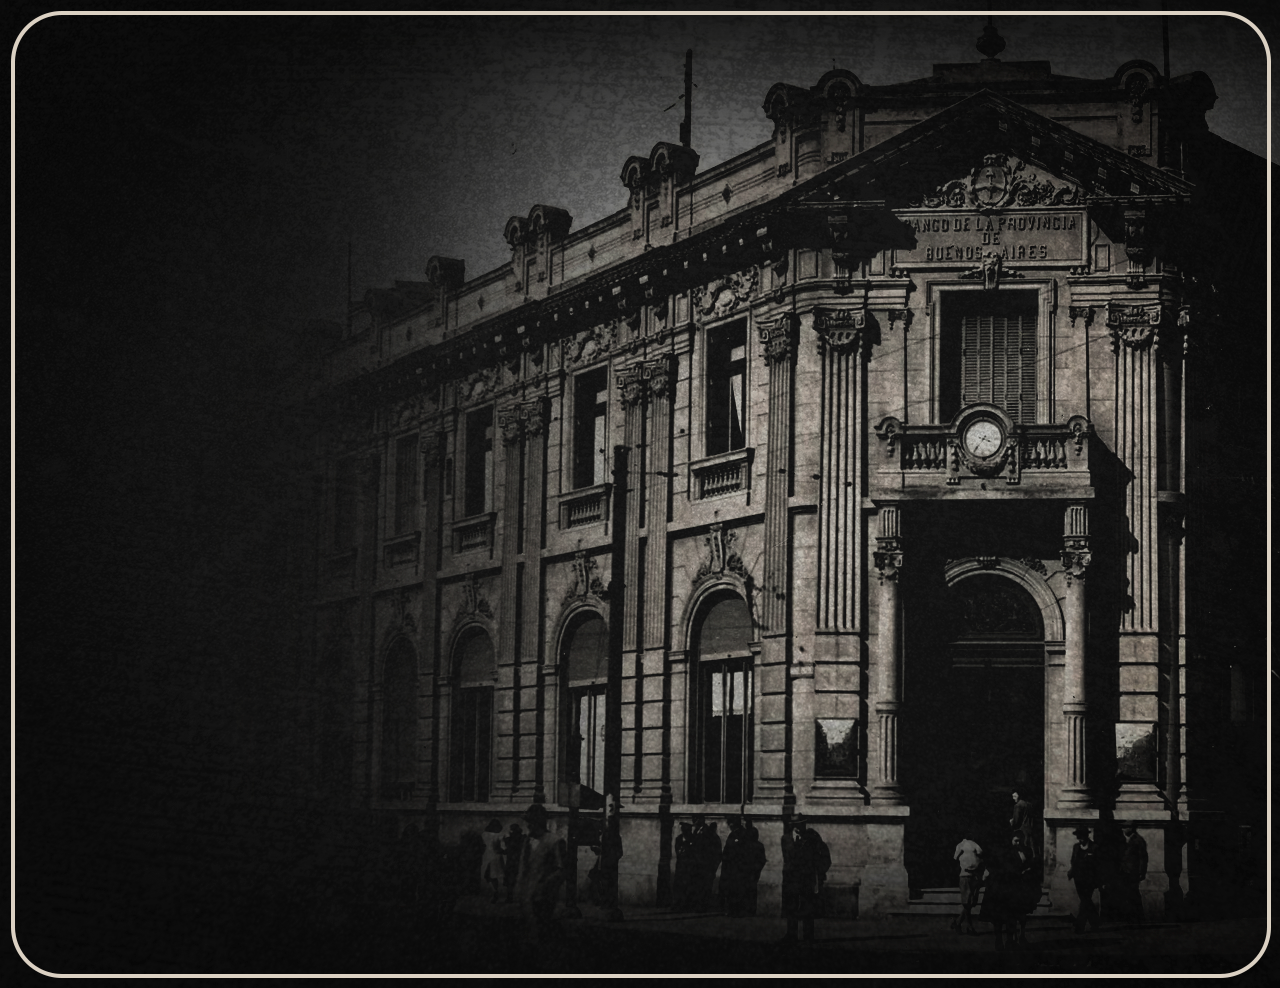 6 DE SEPTIEMBRE 1822. Inicia sus operaciones el Banco Provincia de Buenos Aires